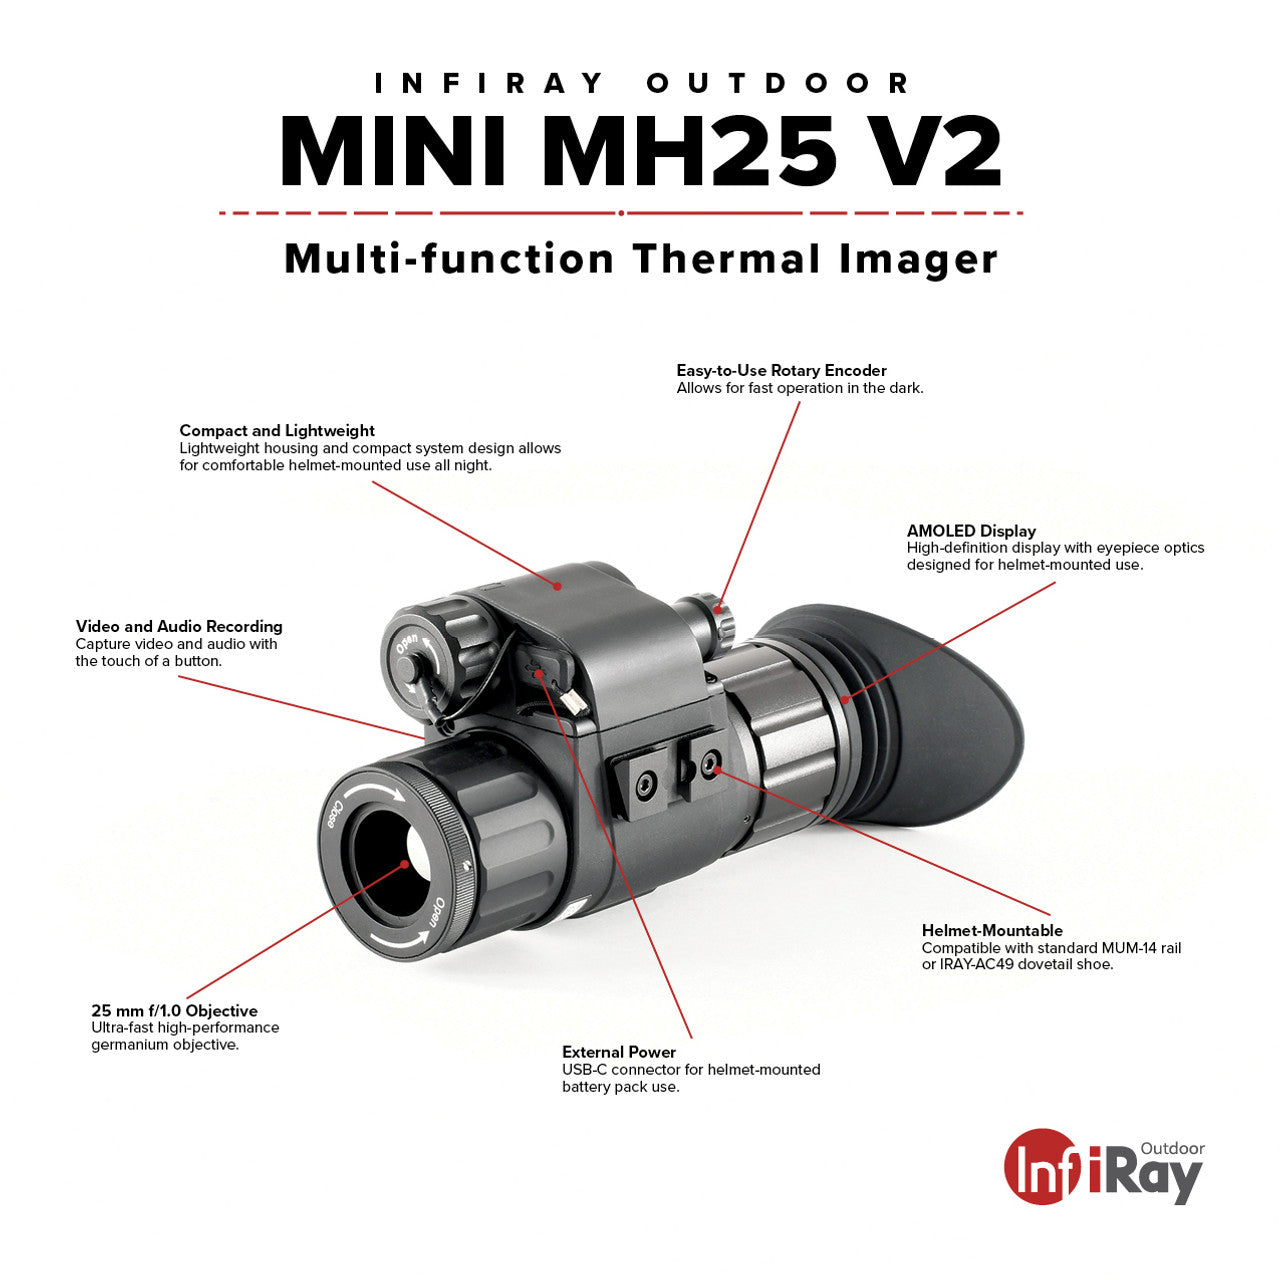 infiRay Outdoor iRay MINI MH25 V2 640